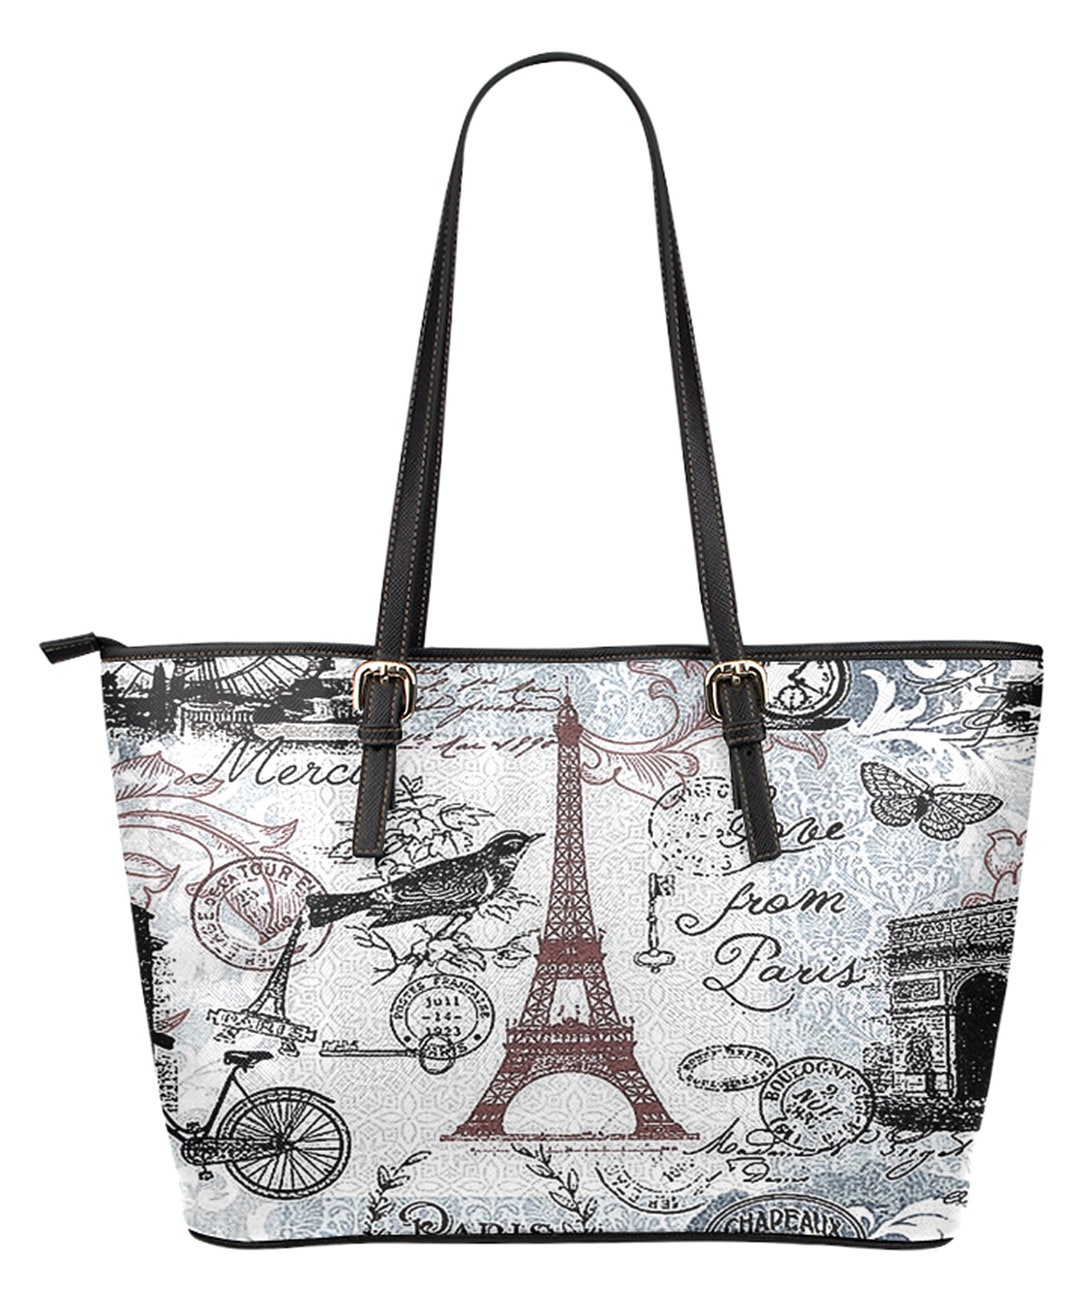 Paris Tote Bag Springtime in Paris Fashionista Bag Vegan - Etsy